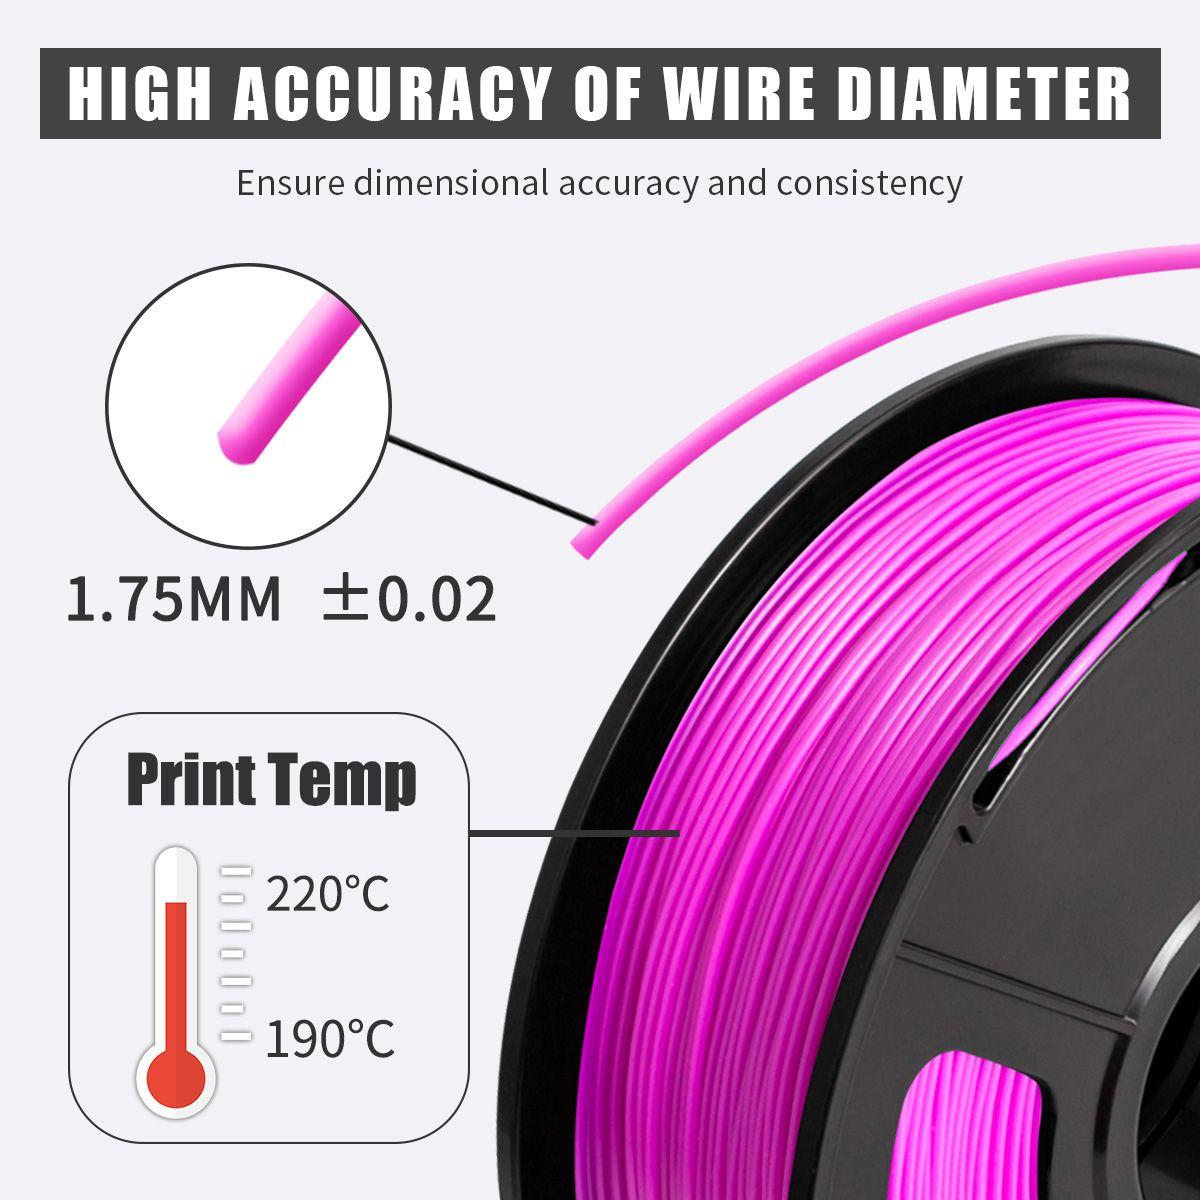 SUNLU PLA Fuchsia Filament 1.75mm 3D Printer Filament 1kg